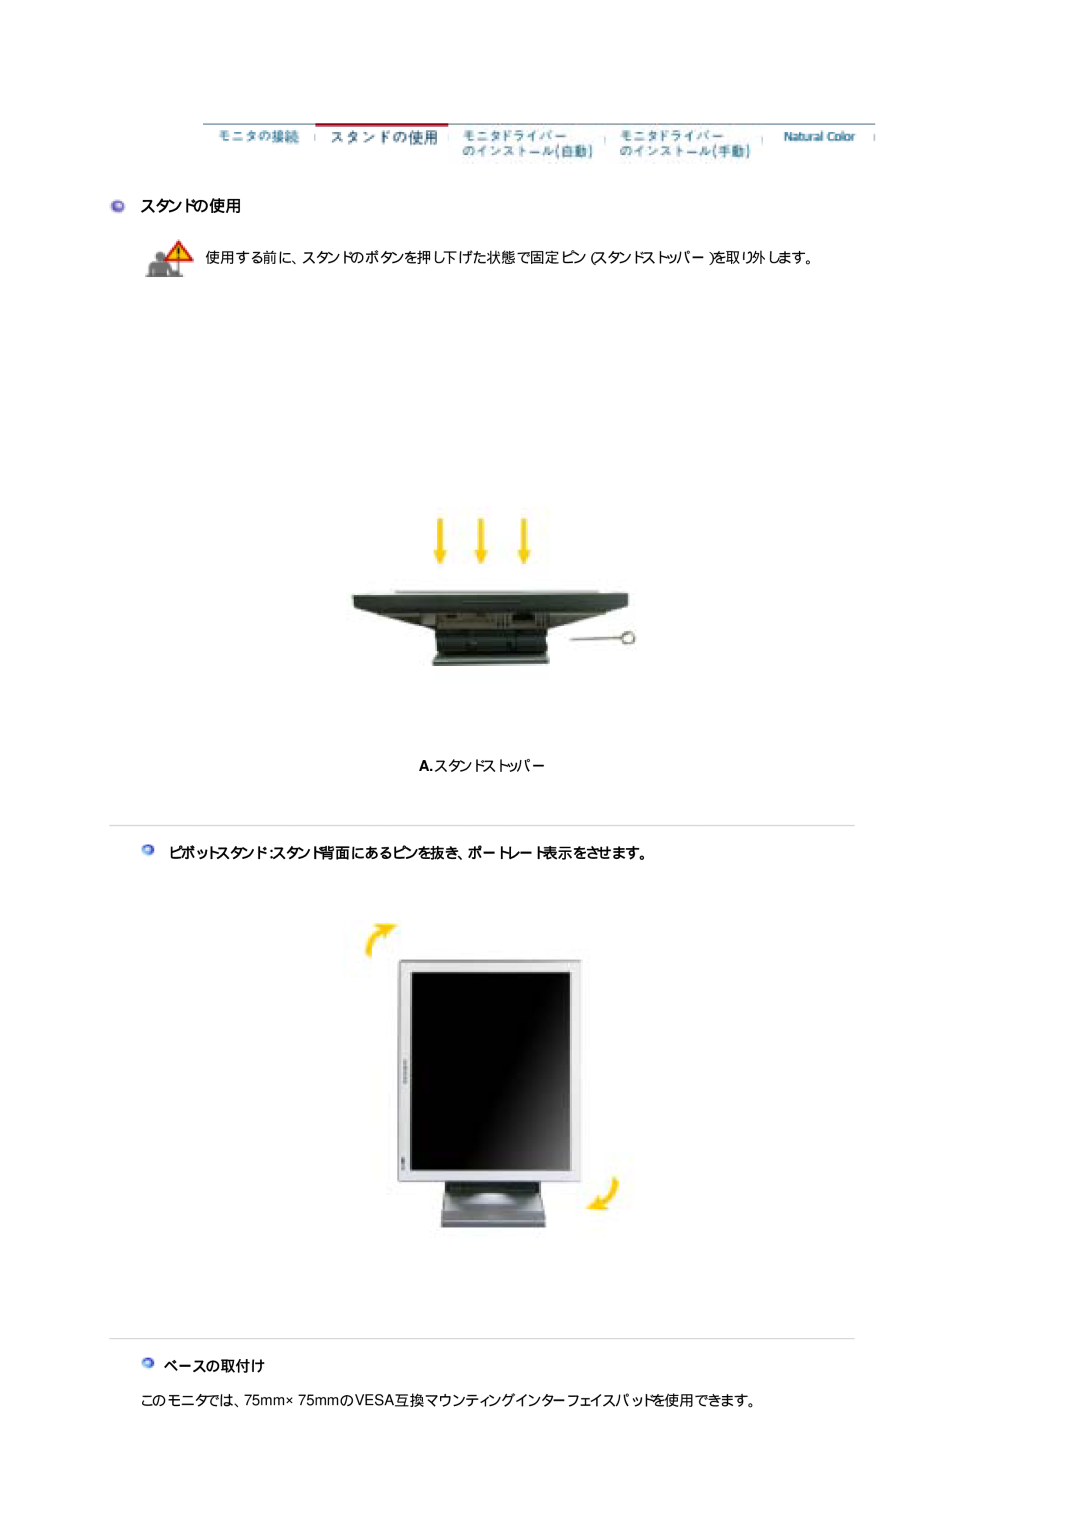 Samsung LS19CIBQS1/XSJ, LS19CIBQSV/XSJ, LS17CIBQS1/XSJ manual スタンドの使用, ピボットスタンド：スタンド背面にあるピンを抜き、ポートレート表示をさせます。 ベースの取付け 